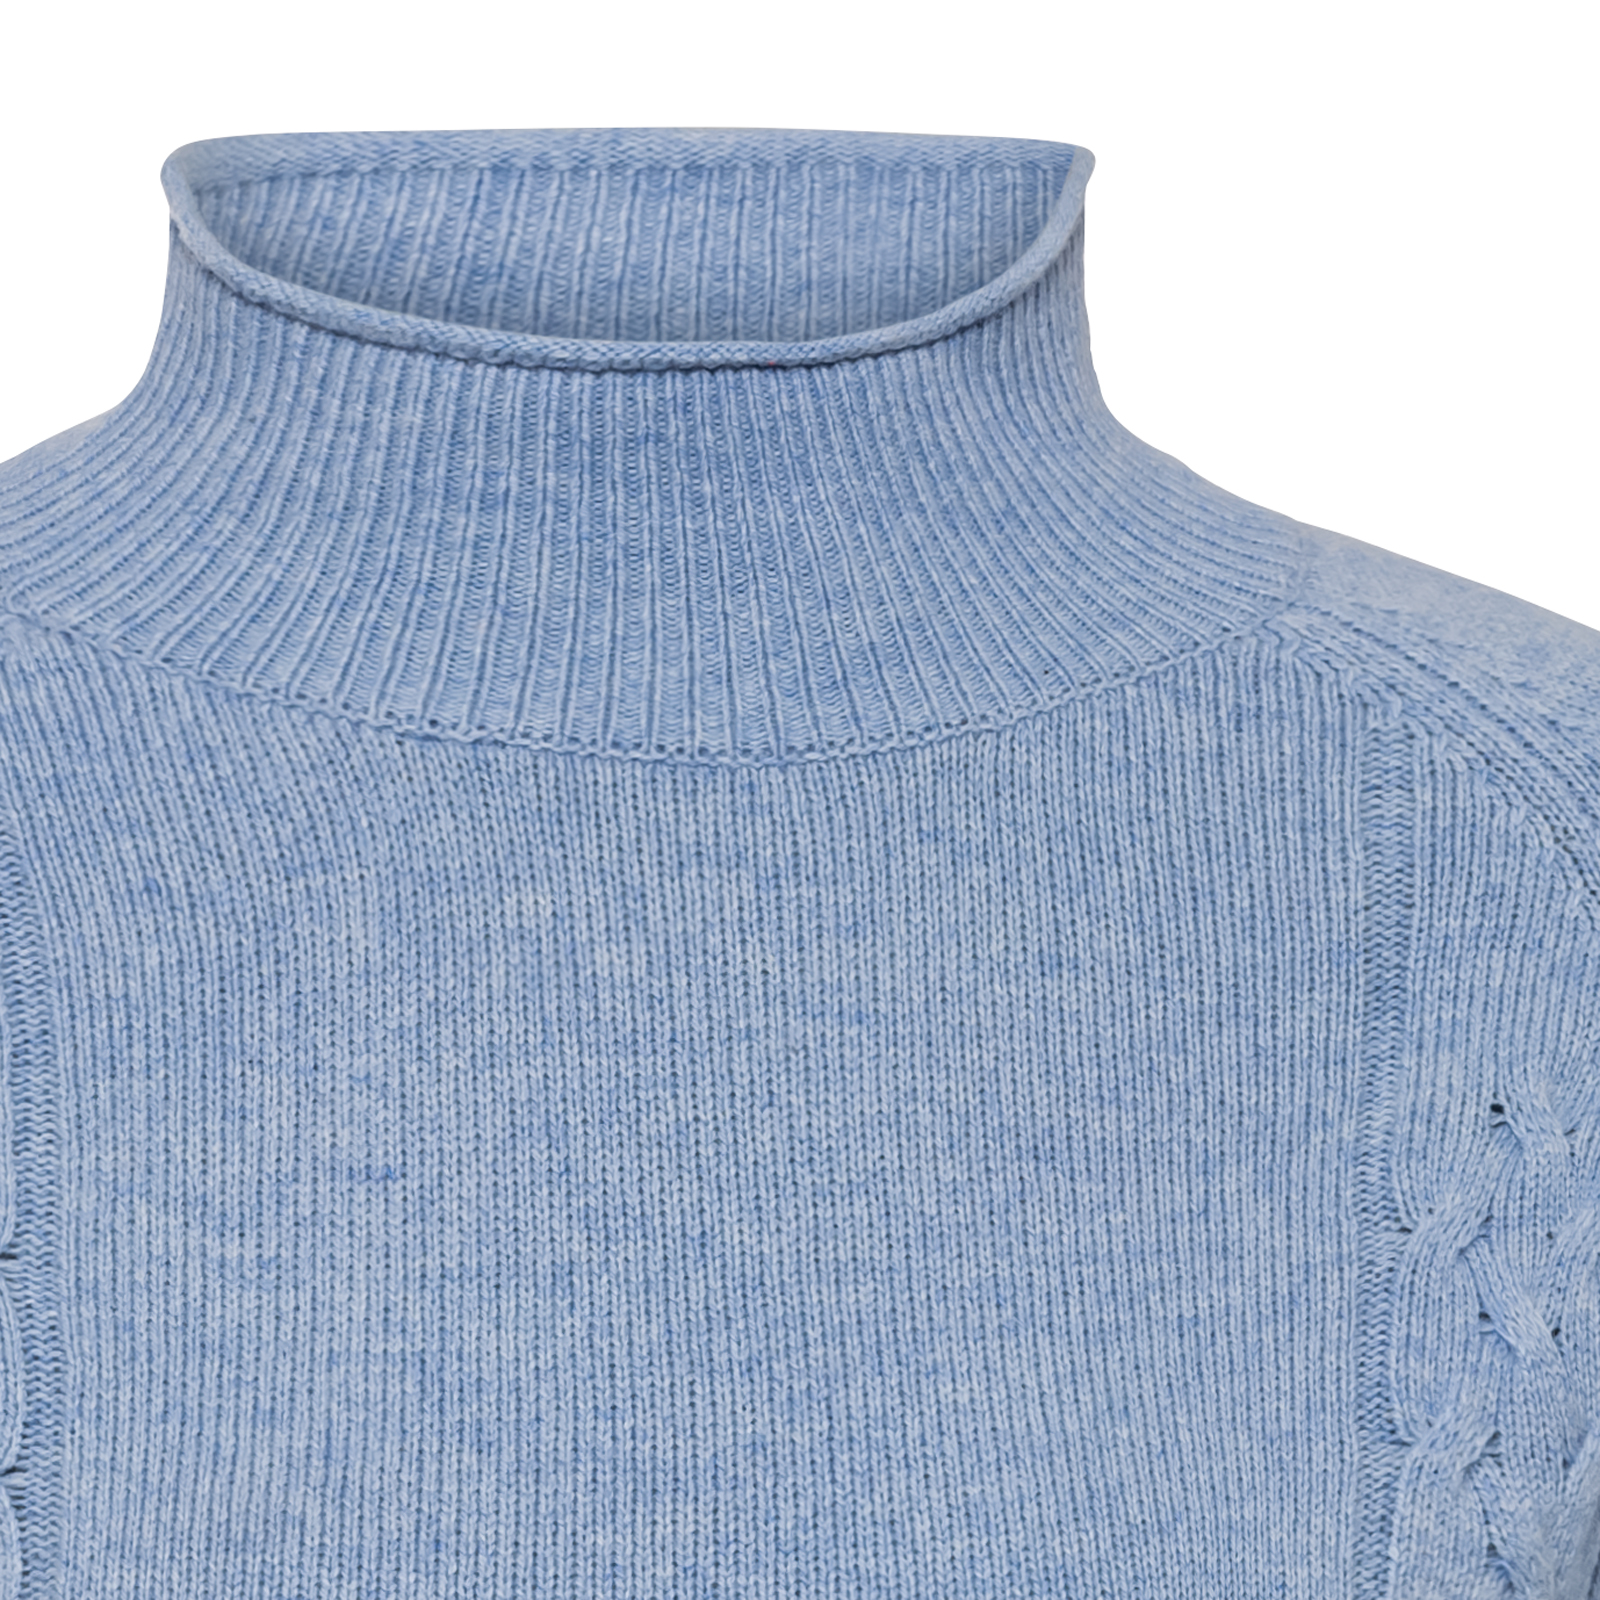 Pull-over durable tricoté avec laine mérinos pour femmes